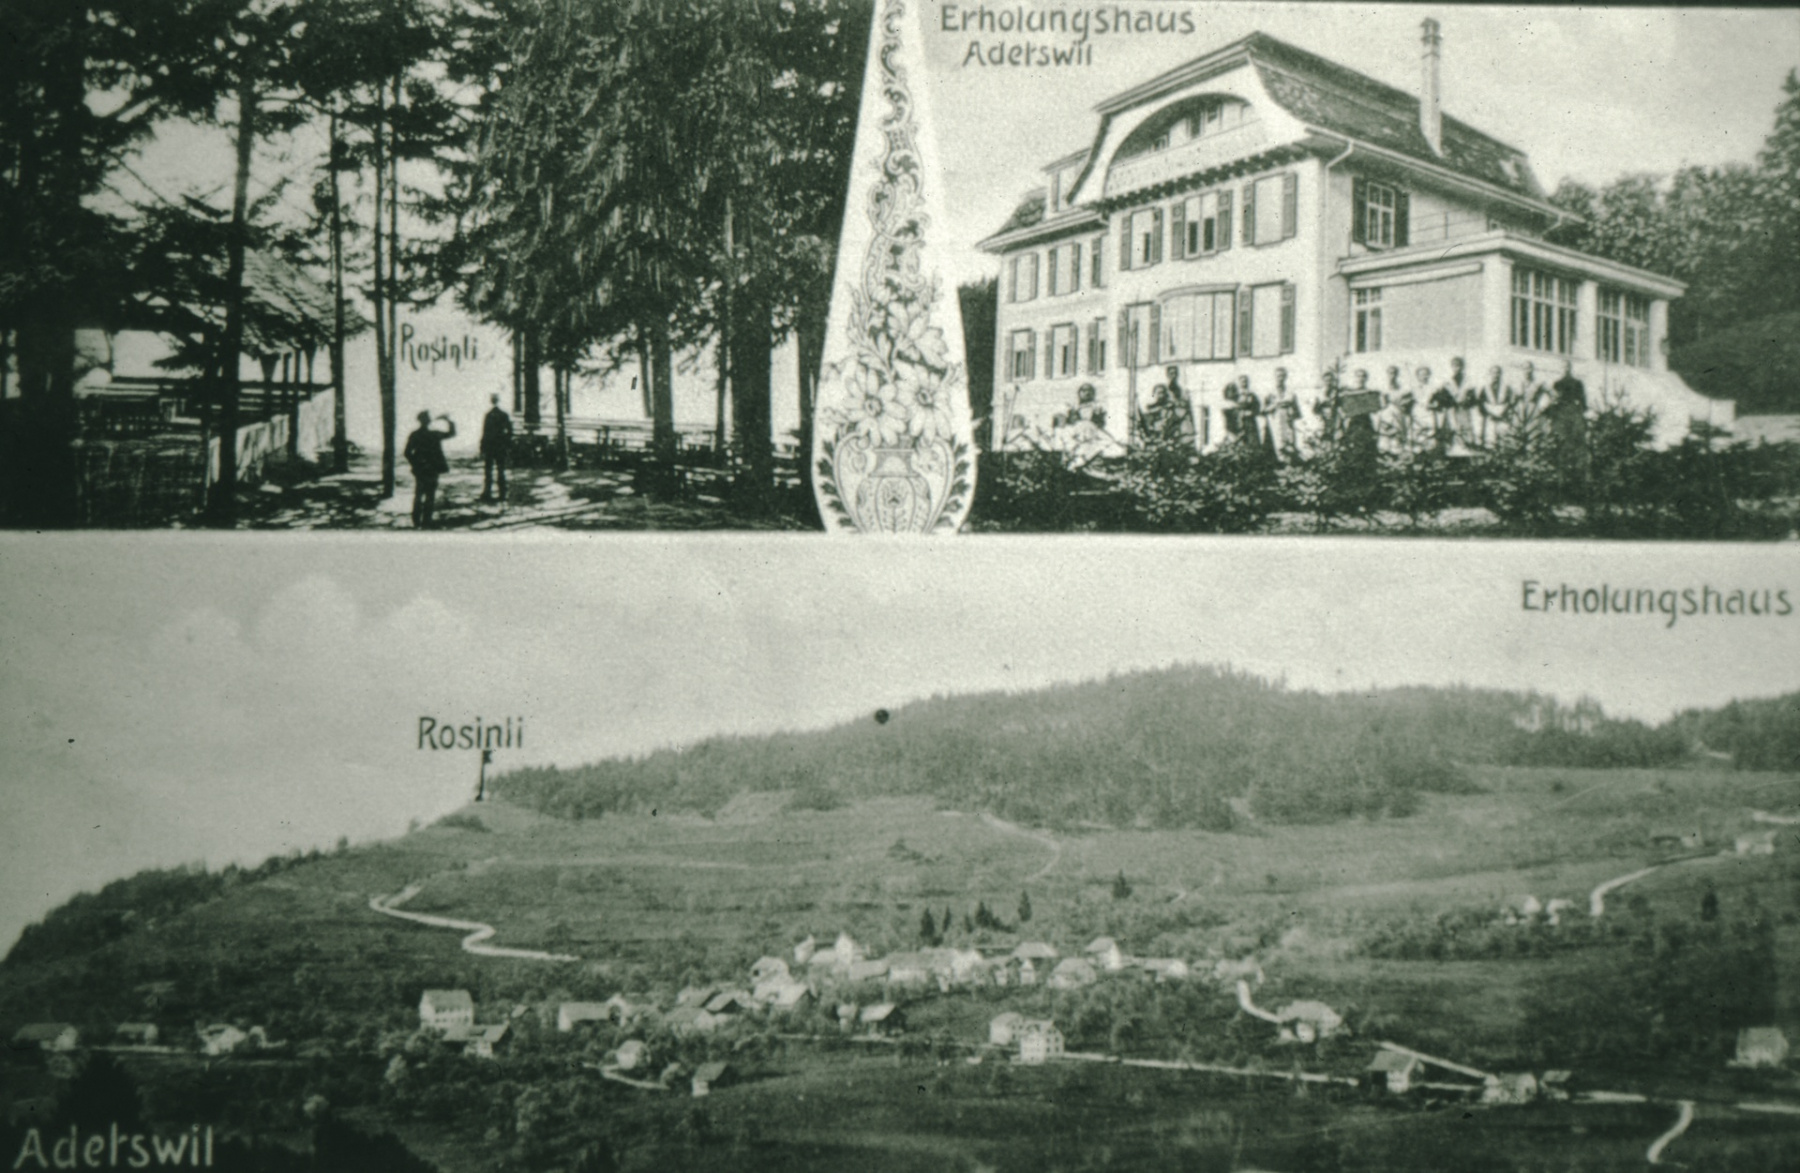 Rosinli und Erholungshaus, Adetswil